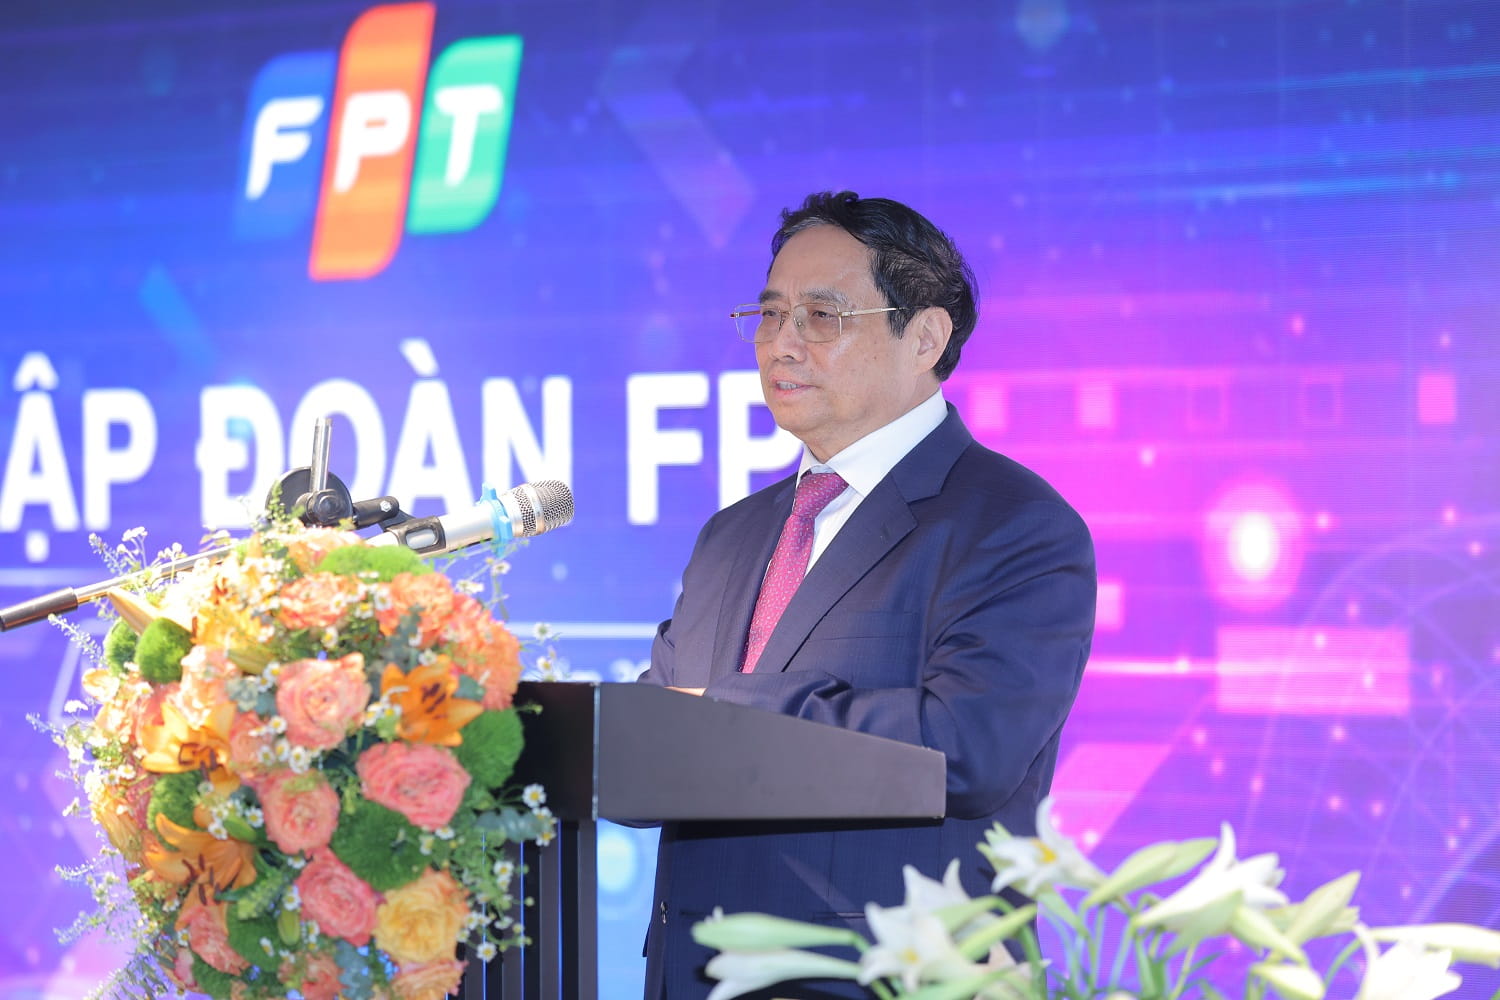 Thủ tướng Chính phủ Phạm Minh Chính: FPT là doanh nghiệp tiên phong về chuyển đổi số tại Việt Nam